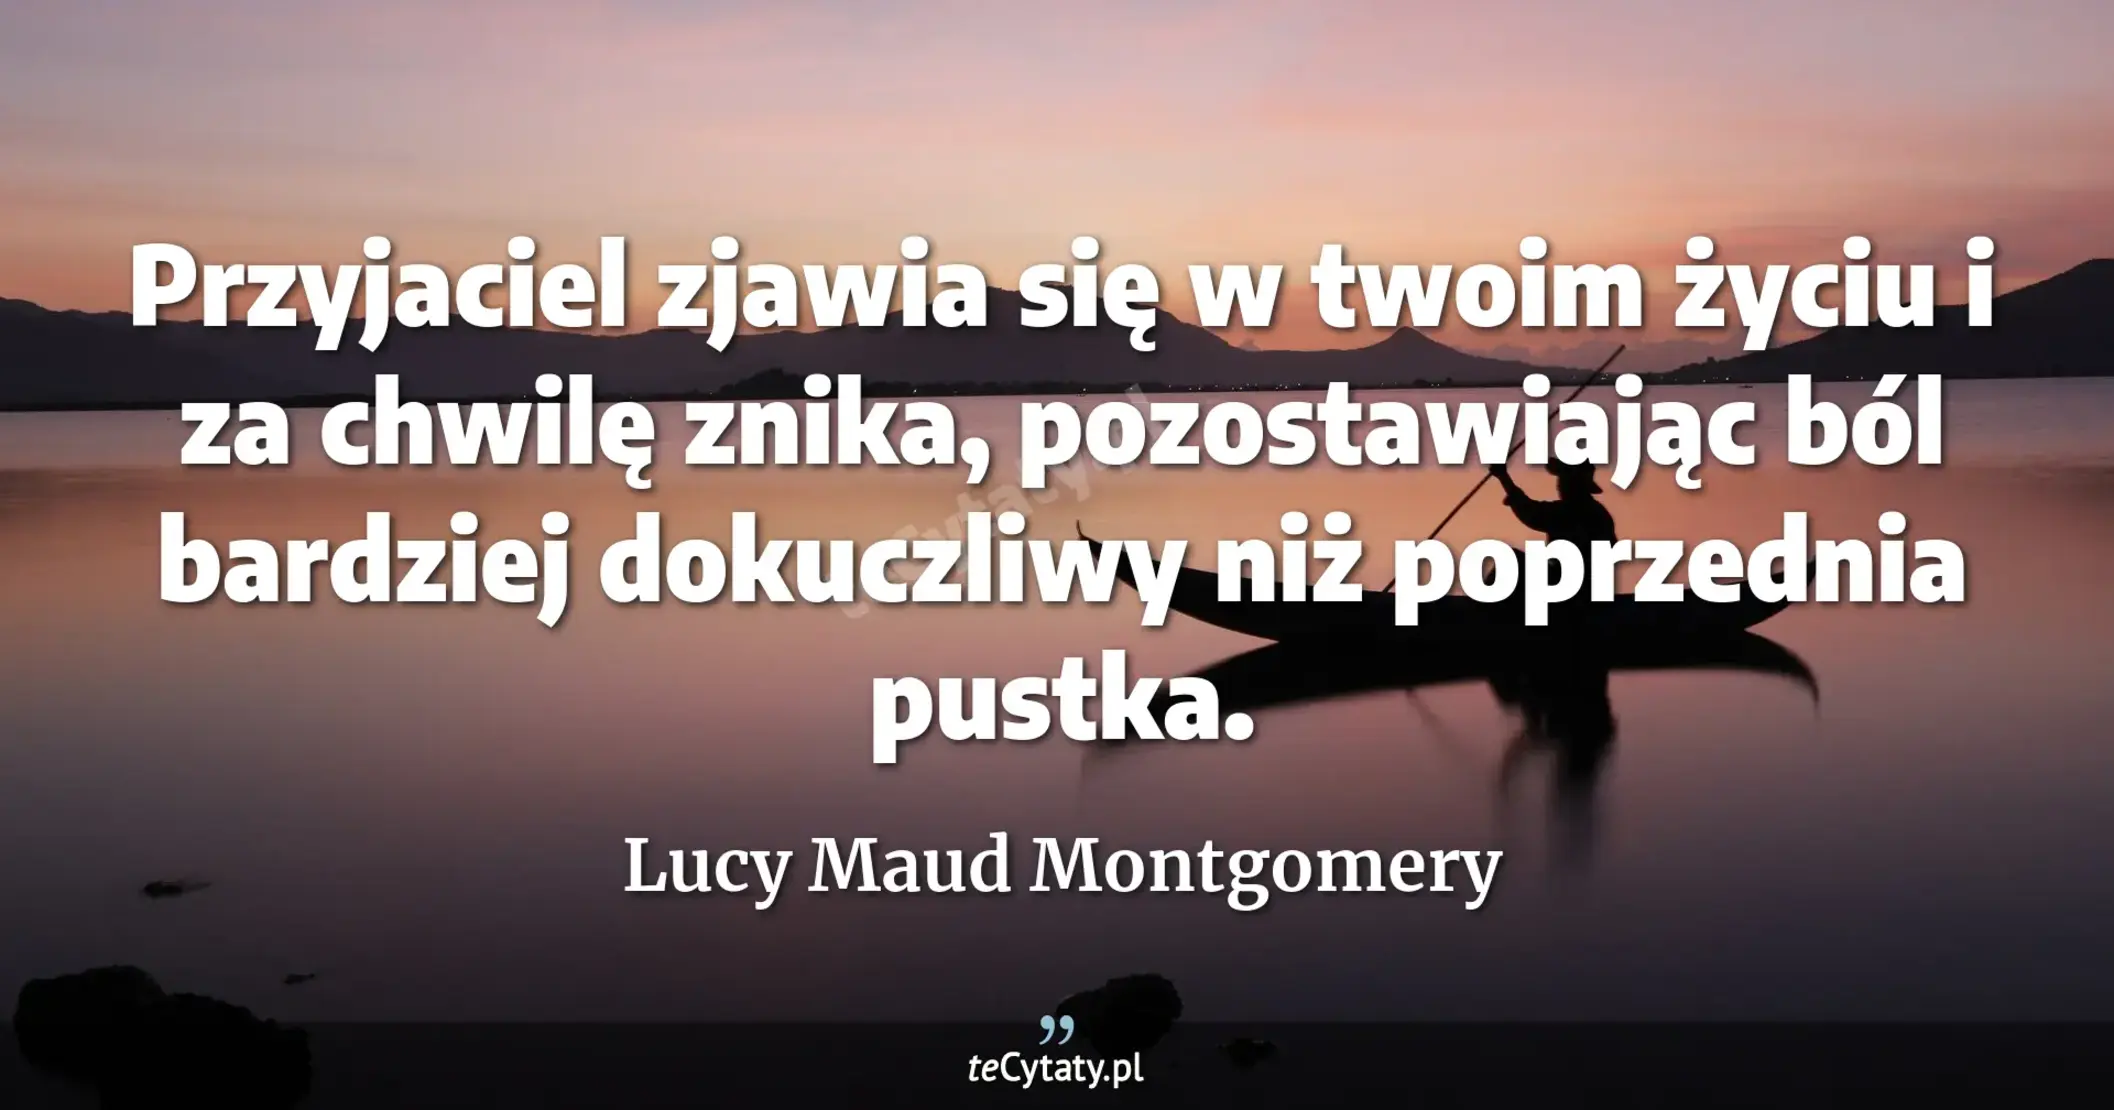 Przyjaciel zjawia się w twoim życiu i za chwilę znika, pozostawiając ból bardziej dokuczliwy niż poprzednia pustka. - Lucy Maud Montgomery